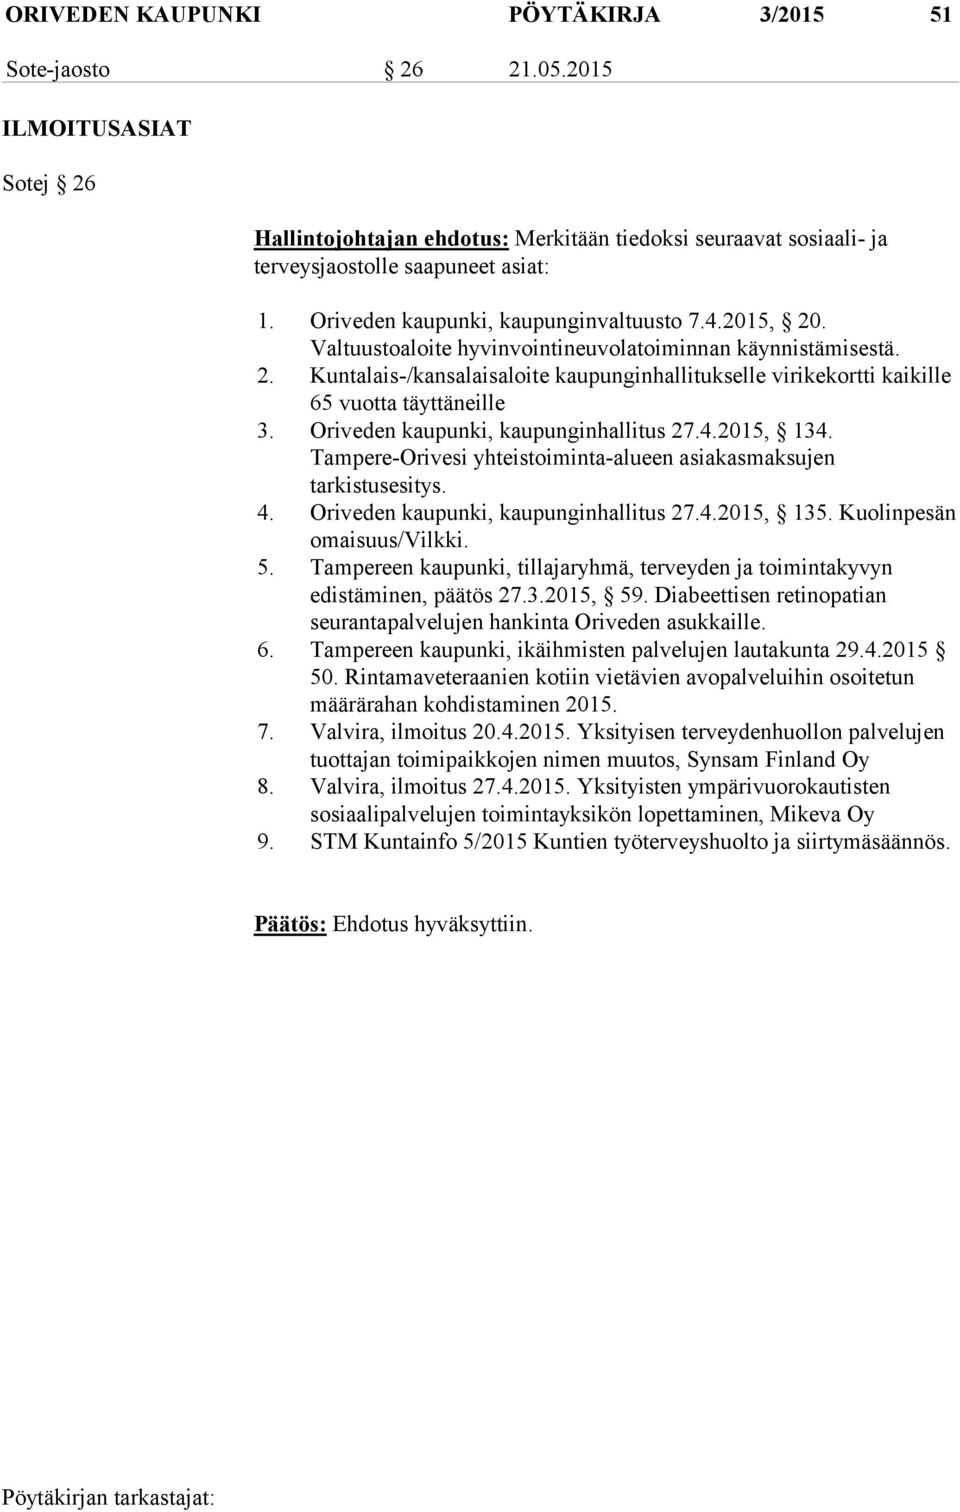 Oriveden kaupunki, kaupunginhallitus 27.4.2015, 134. Tampere-Orivesi yhteistoiminta-alueen asiakasmaksujen tarkistusesitys. 4. Oriveden kaupunki, kaupunginhallitus 27.4.2015, 135.